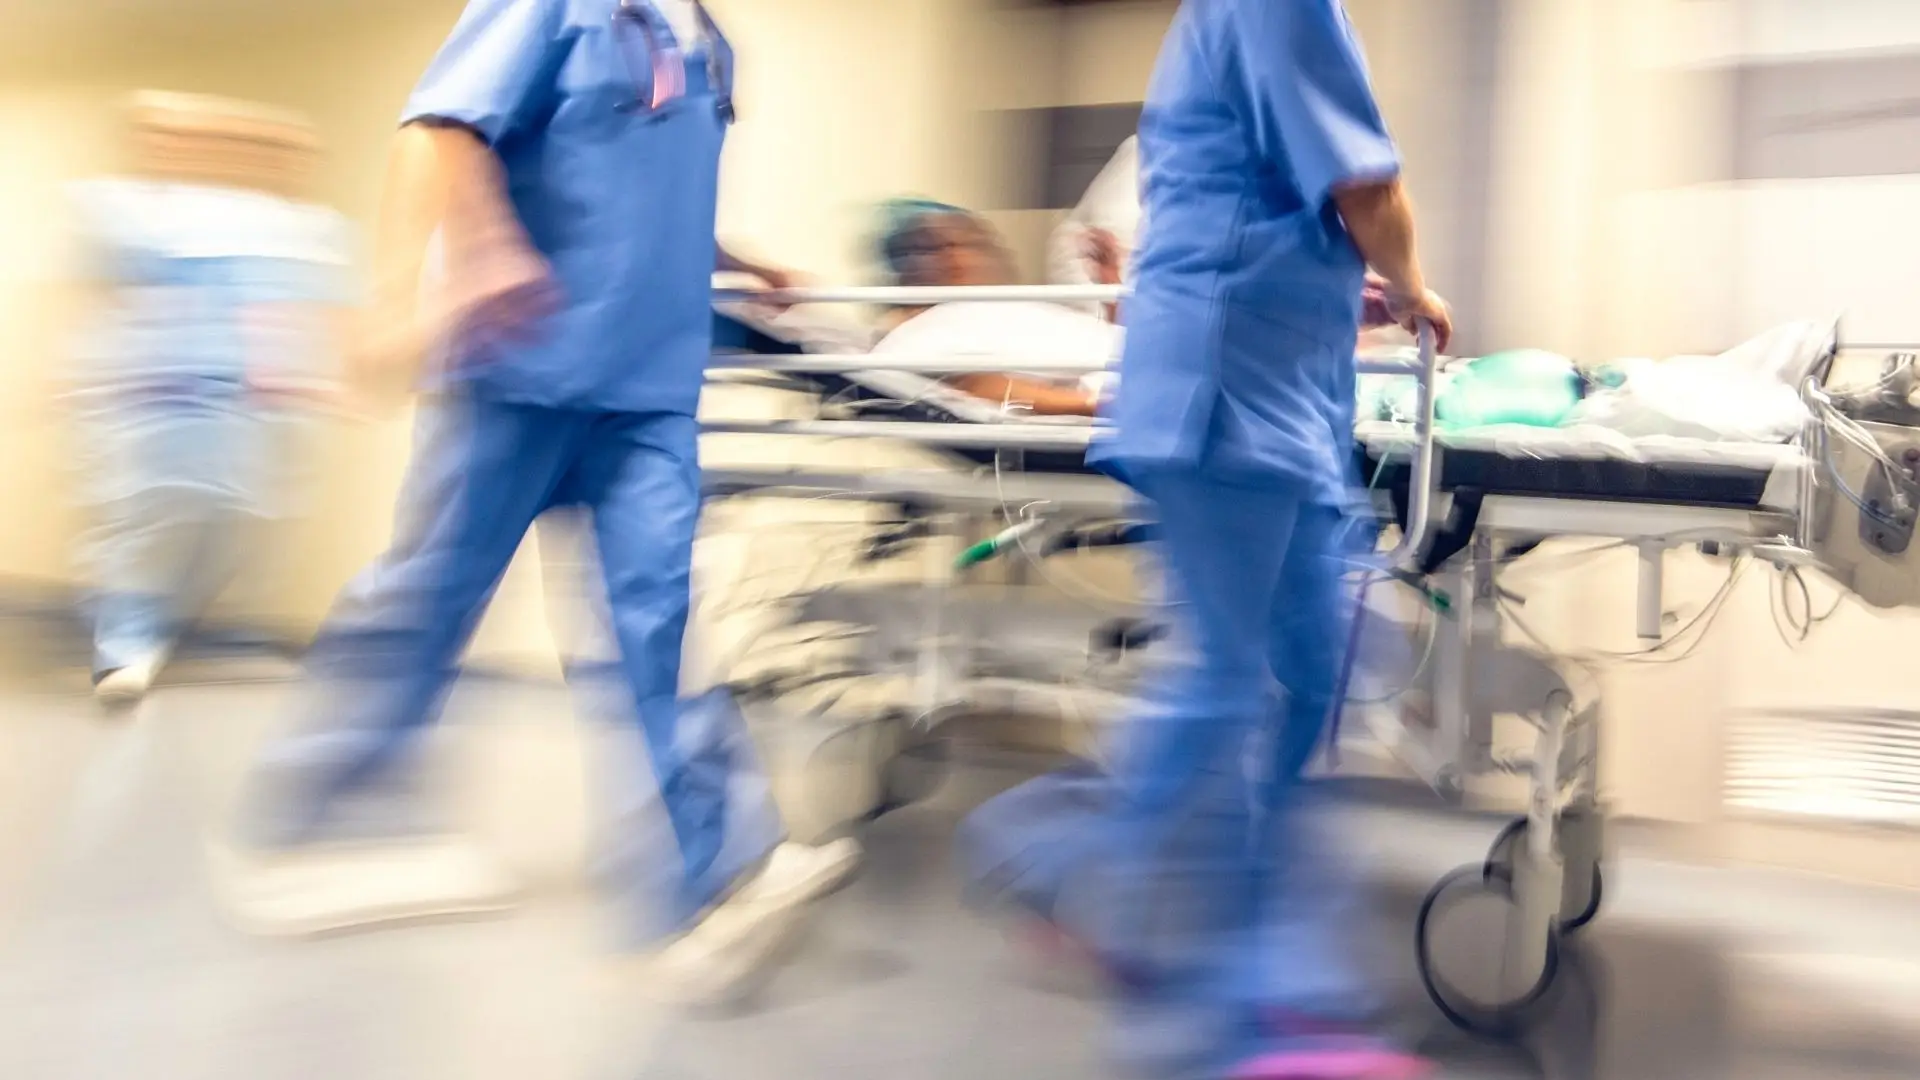 Fecho rotativo de urgências será "provisoriamente definitivo", diz Sindicato Independente dos Médicos